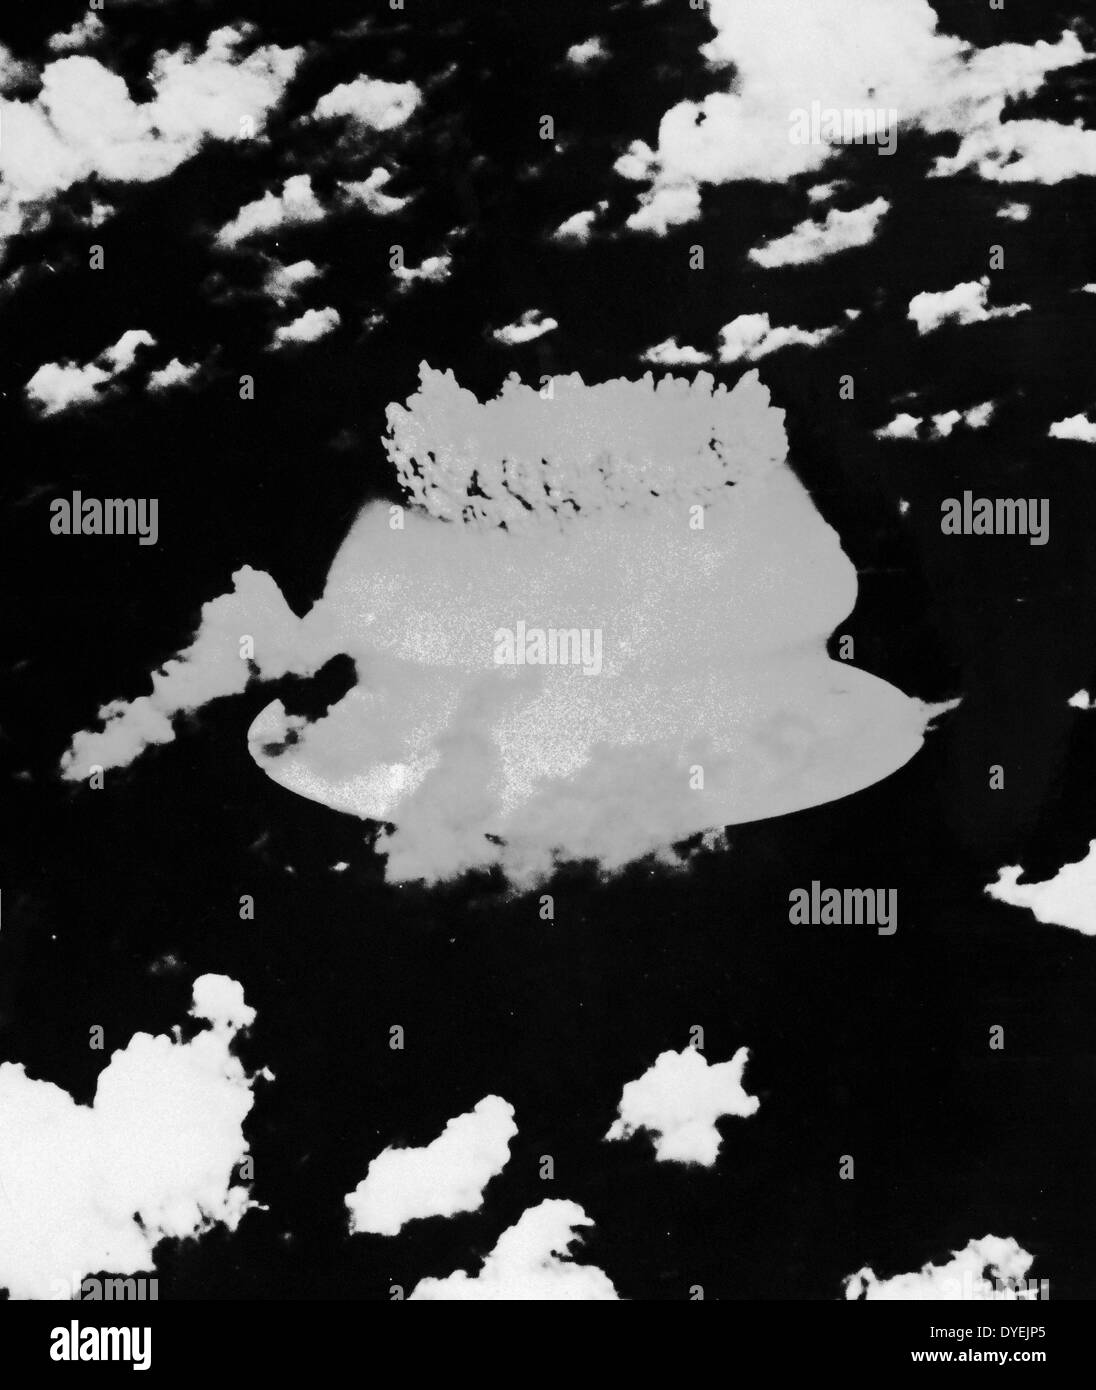 Betrieb Kreuzung war eine Reihe von nuklearen Tests, die durch die Vereinigten Staaten an der Bikini Atoll in mid-1946. Es war der erste Test einer Atomwaffe seit der Dreifaltigkeit Nuclear Test im Juli 1945, und die erste Detonation einer Atombombe seit der Atombombe auf Nagasaki Am 9. August 1945. Sein Zweck war, die Wirkung von Atomwaffen auf Marineschiffe zu untersuchen Stockfoto